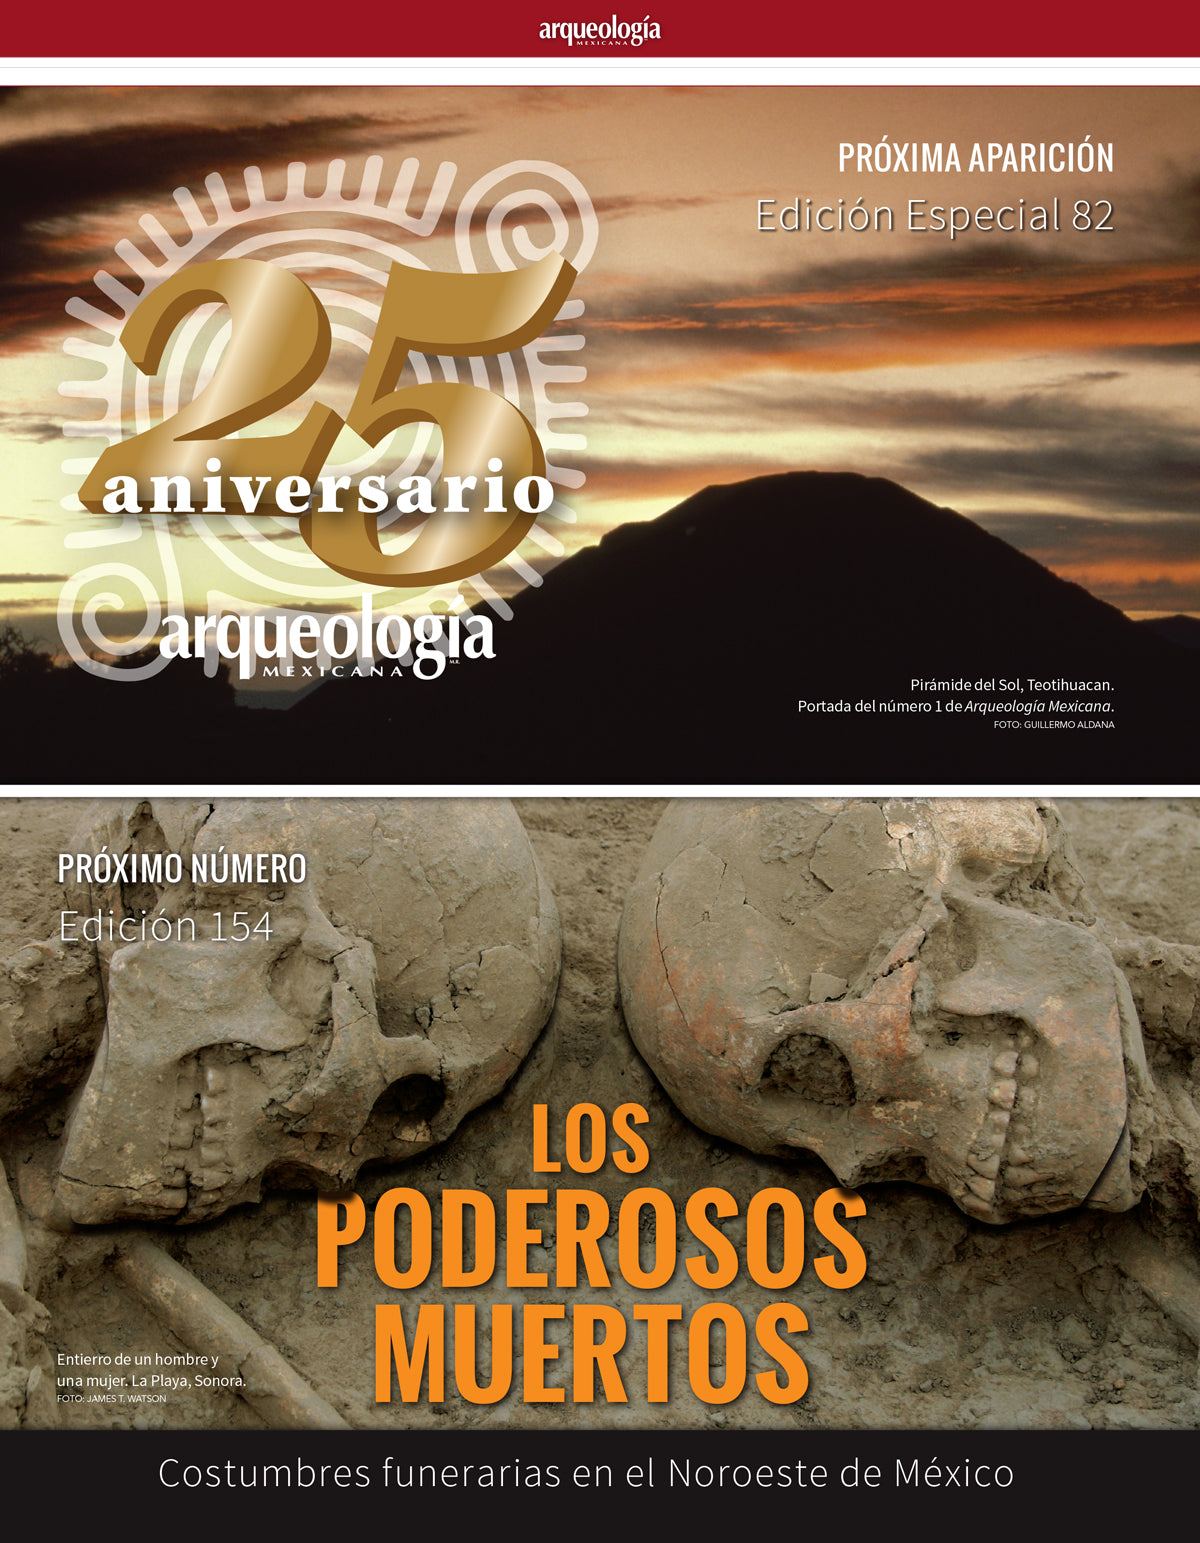 Arqueología e historia del estado de Morelos